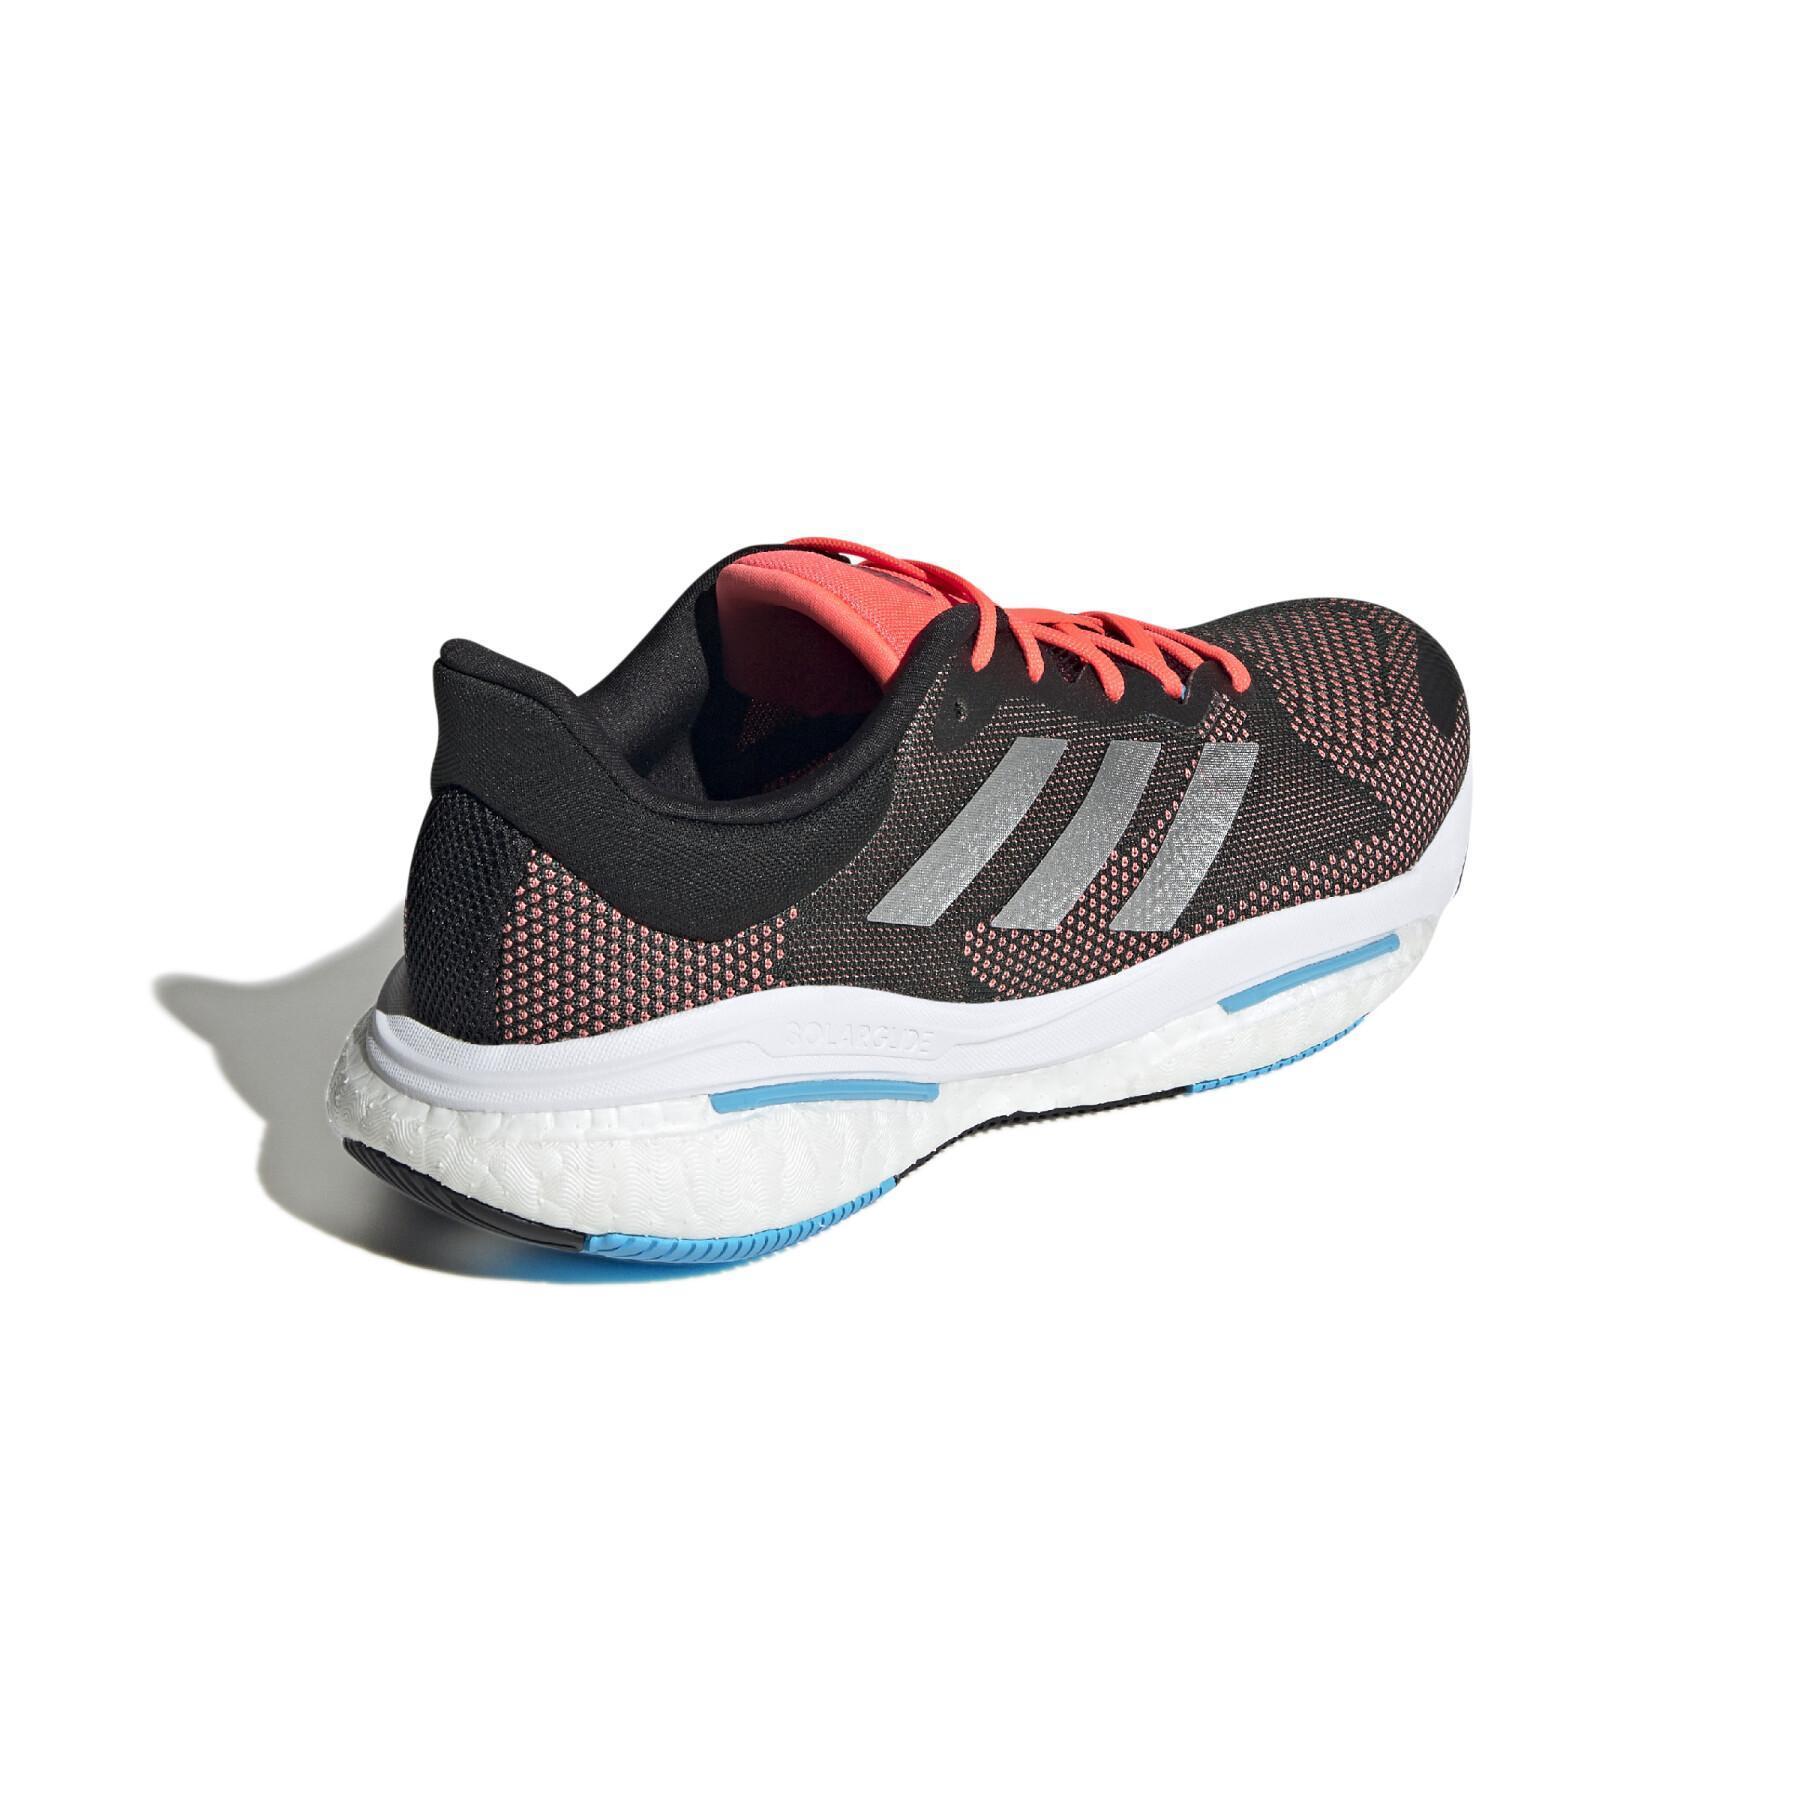 Chaussures de running adidas Solar Glide 5